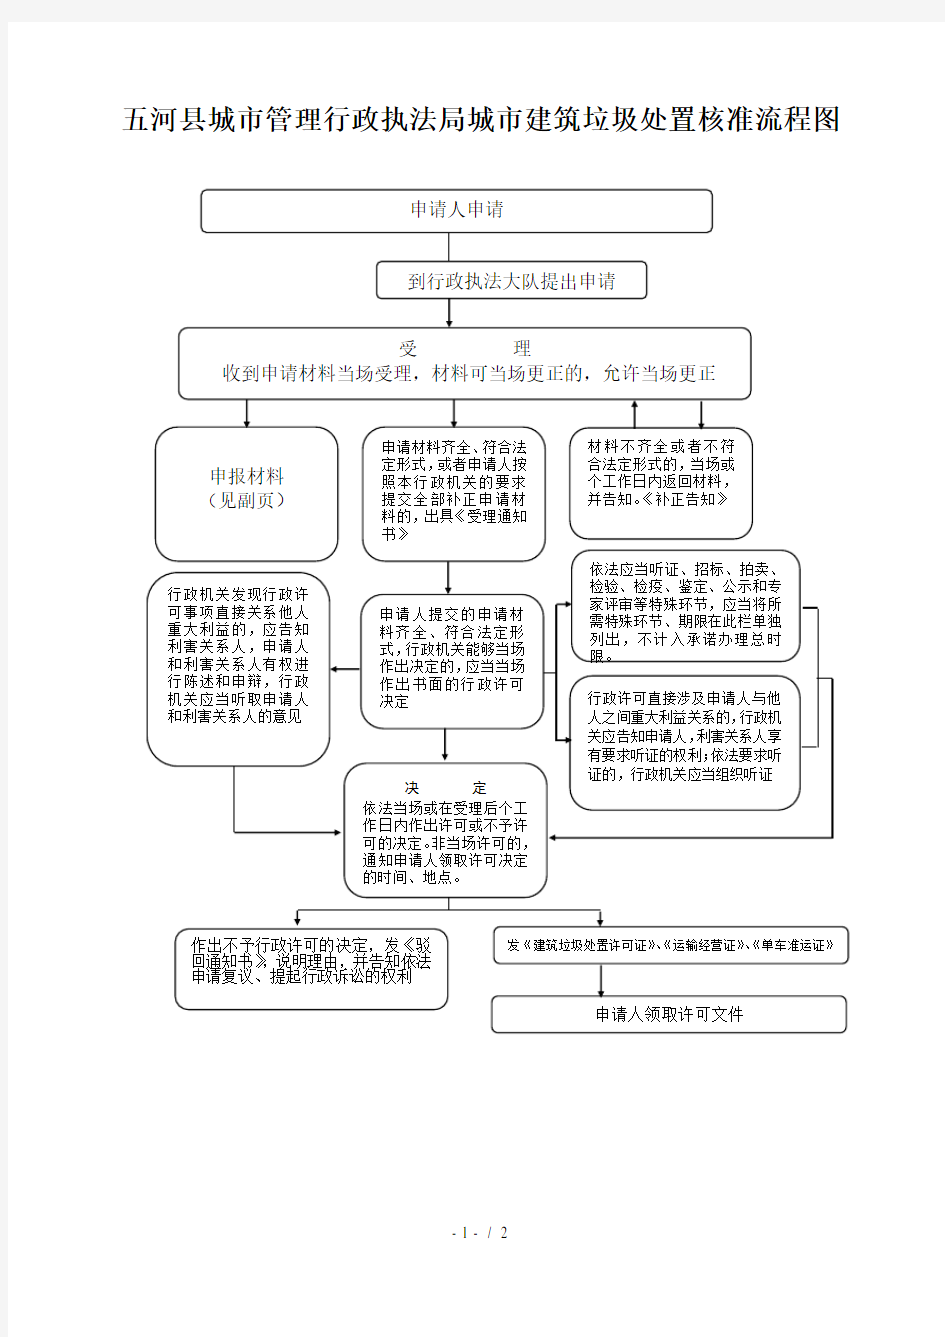 五河县城市管理行政执法局城市建筑垃圾处置核准流程图